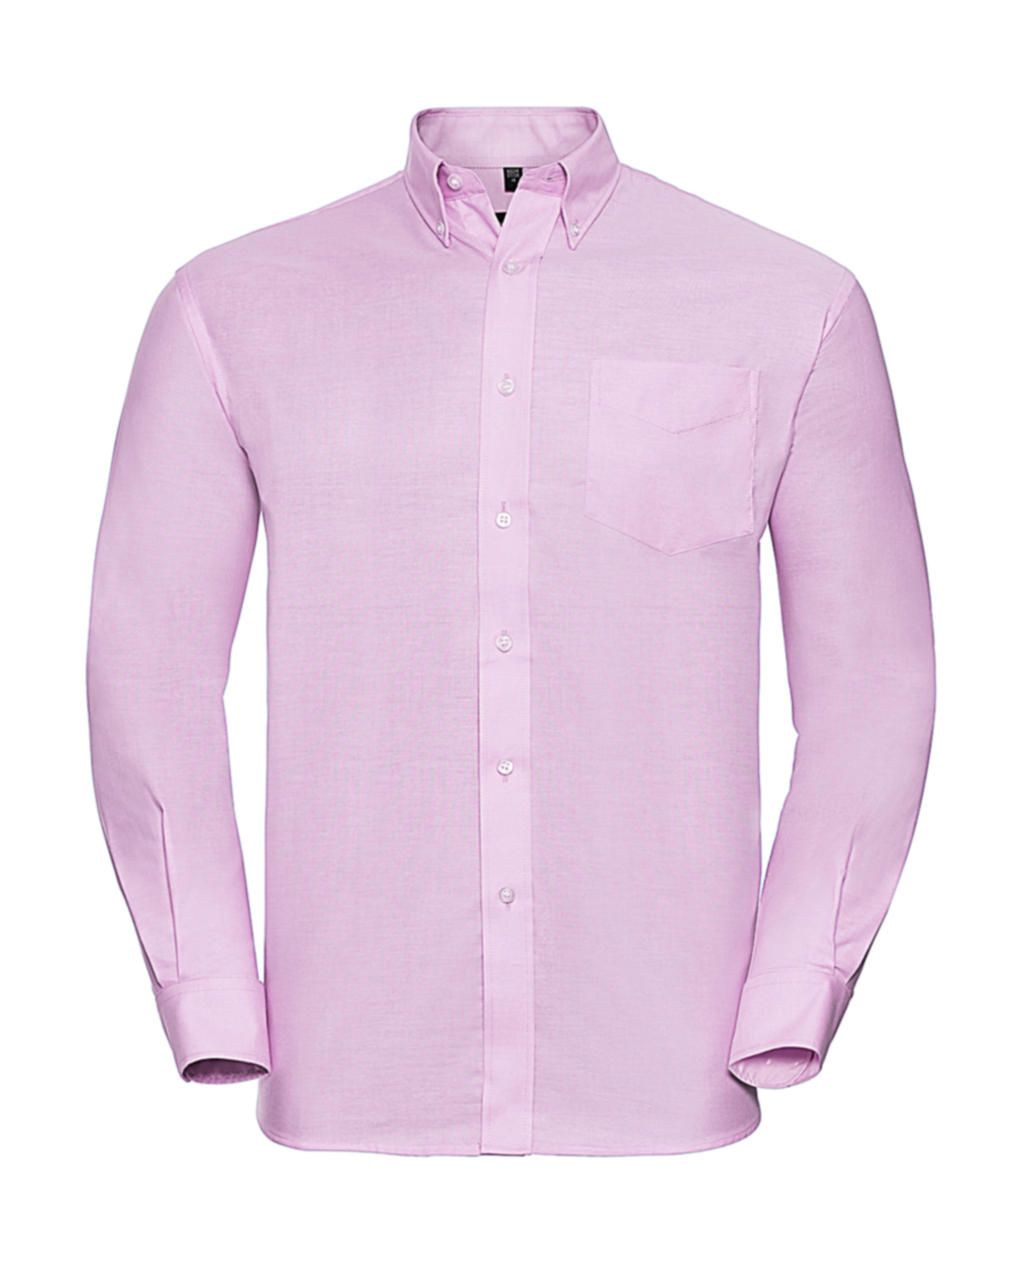 Košile Oxford s dlouhým rukávem Velikost: M, Barva: Classic Pink